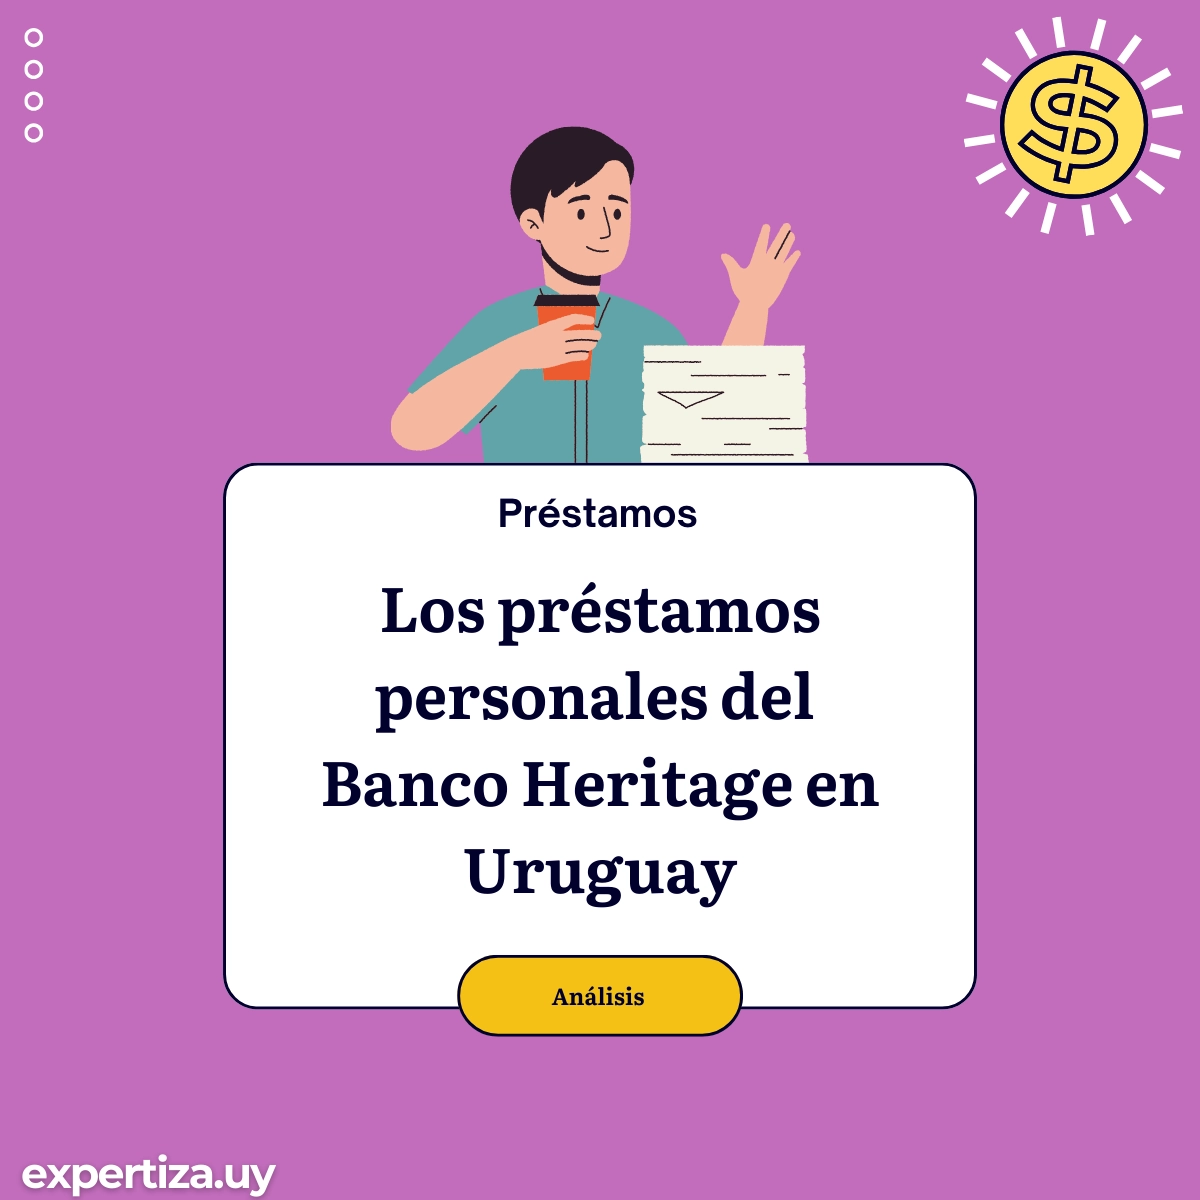 Los préstamos personales del Banco Heritage en Uruguay.